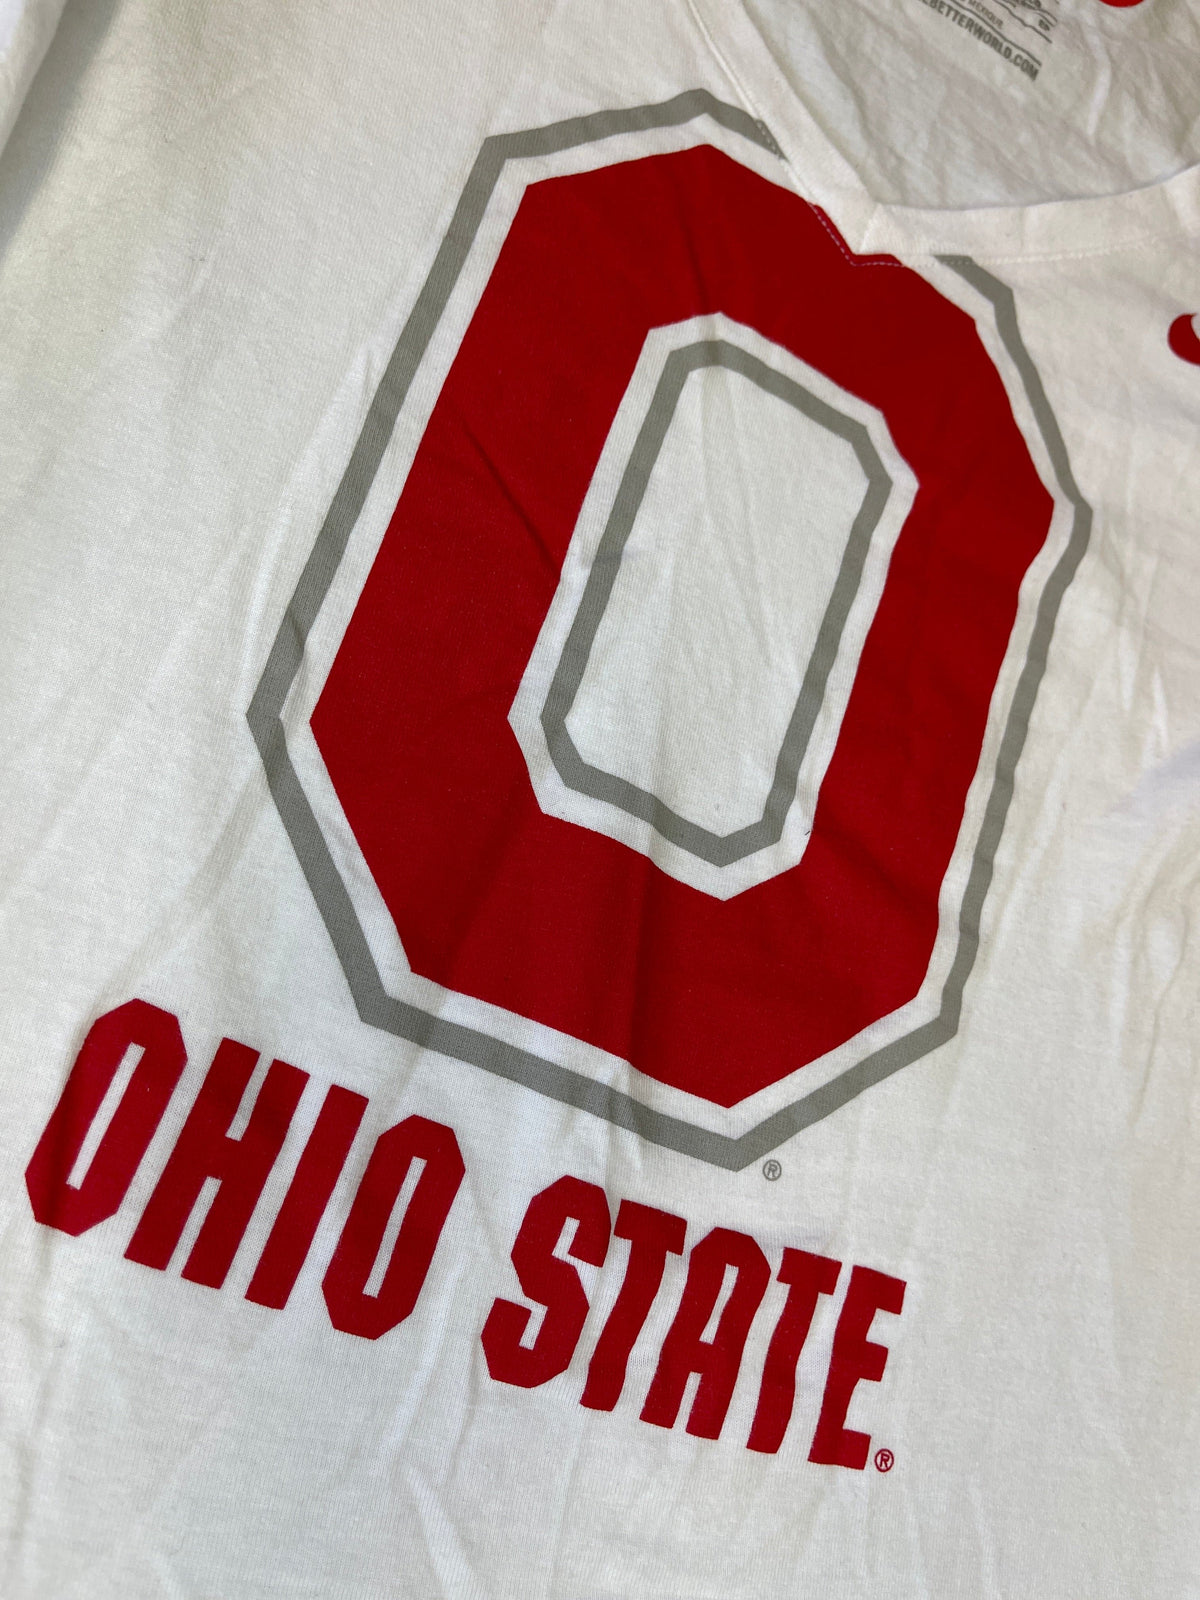 NCAA Ohio State Buckeyes White L/S T-Shirt Women's X-Small